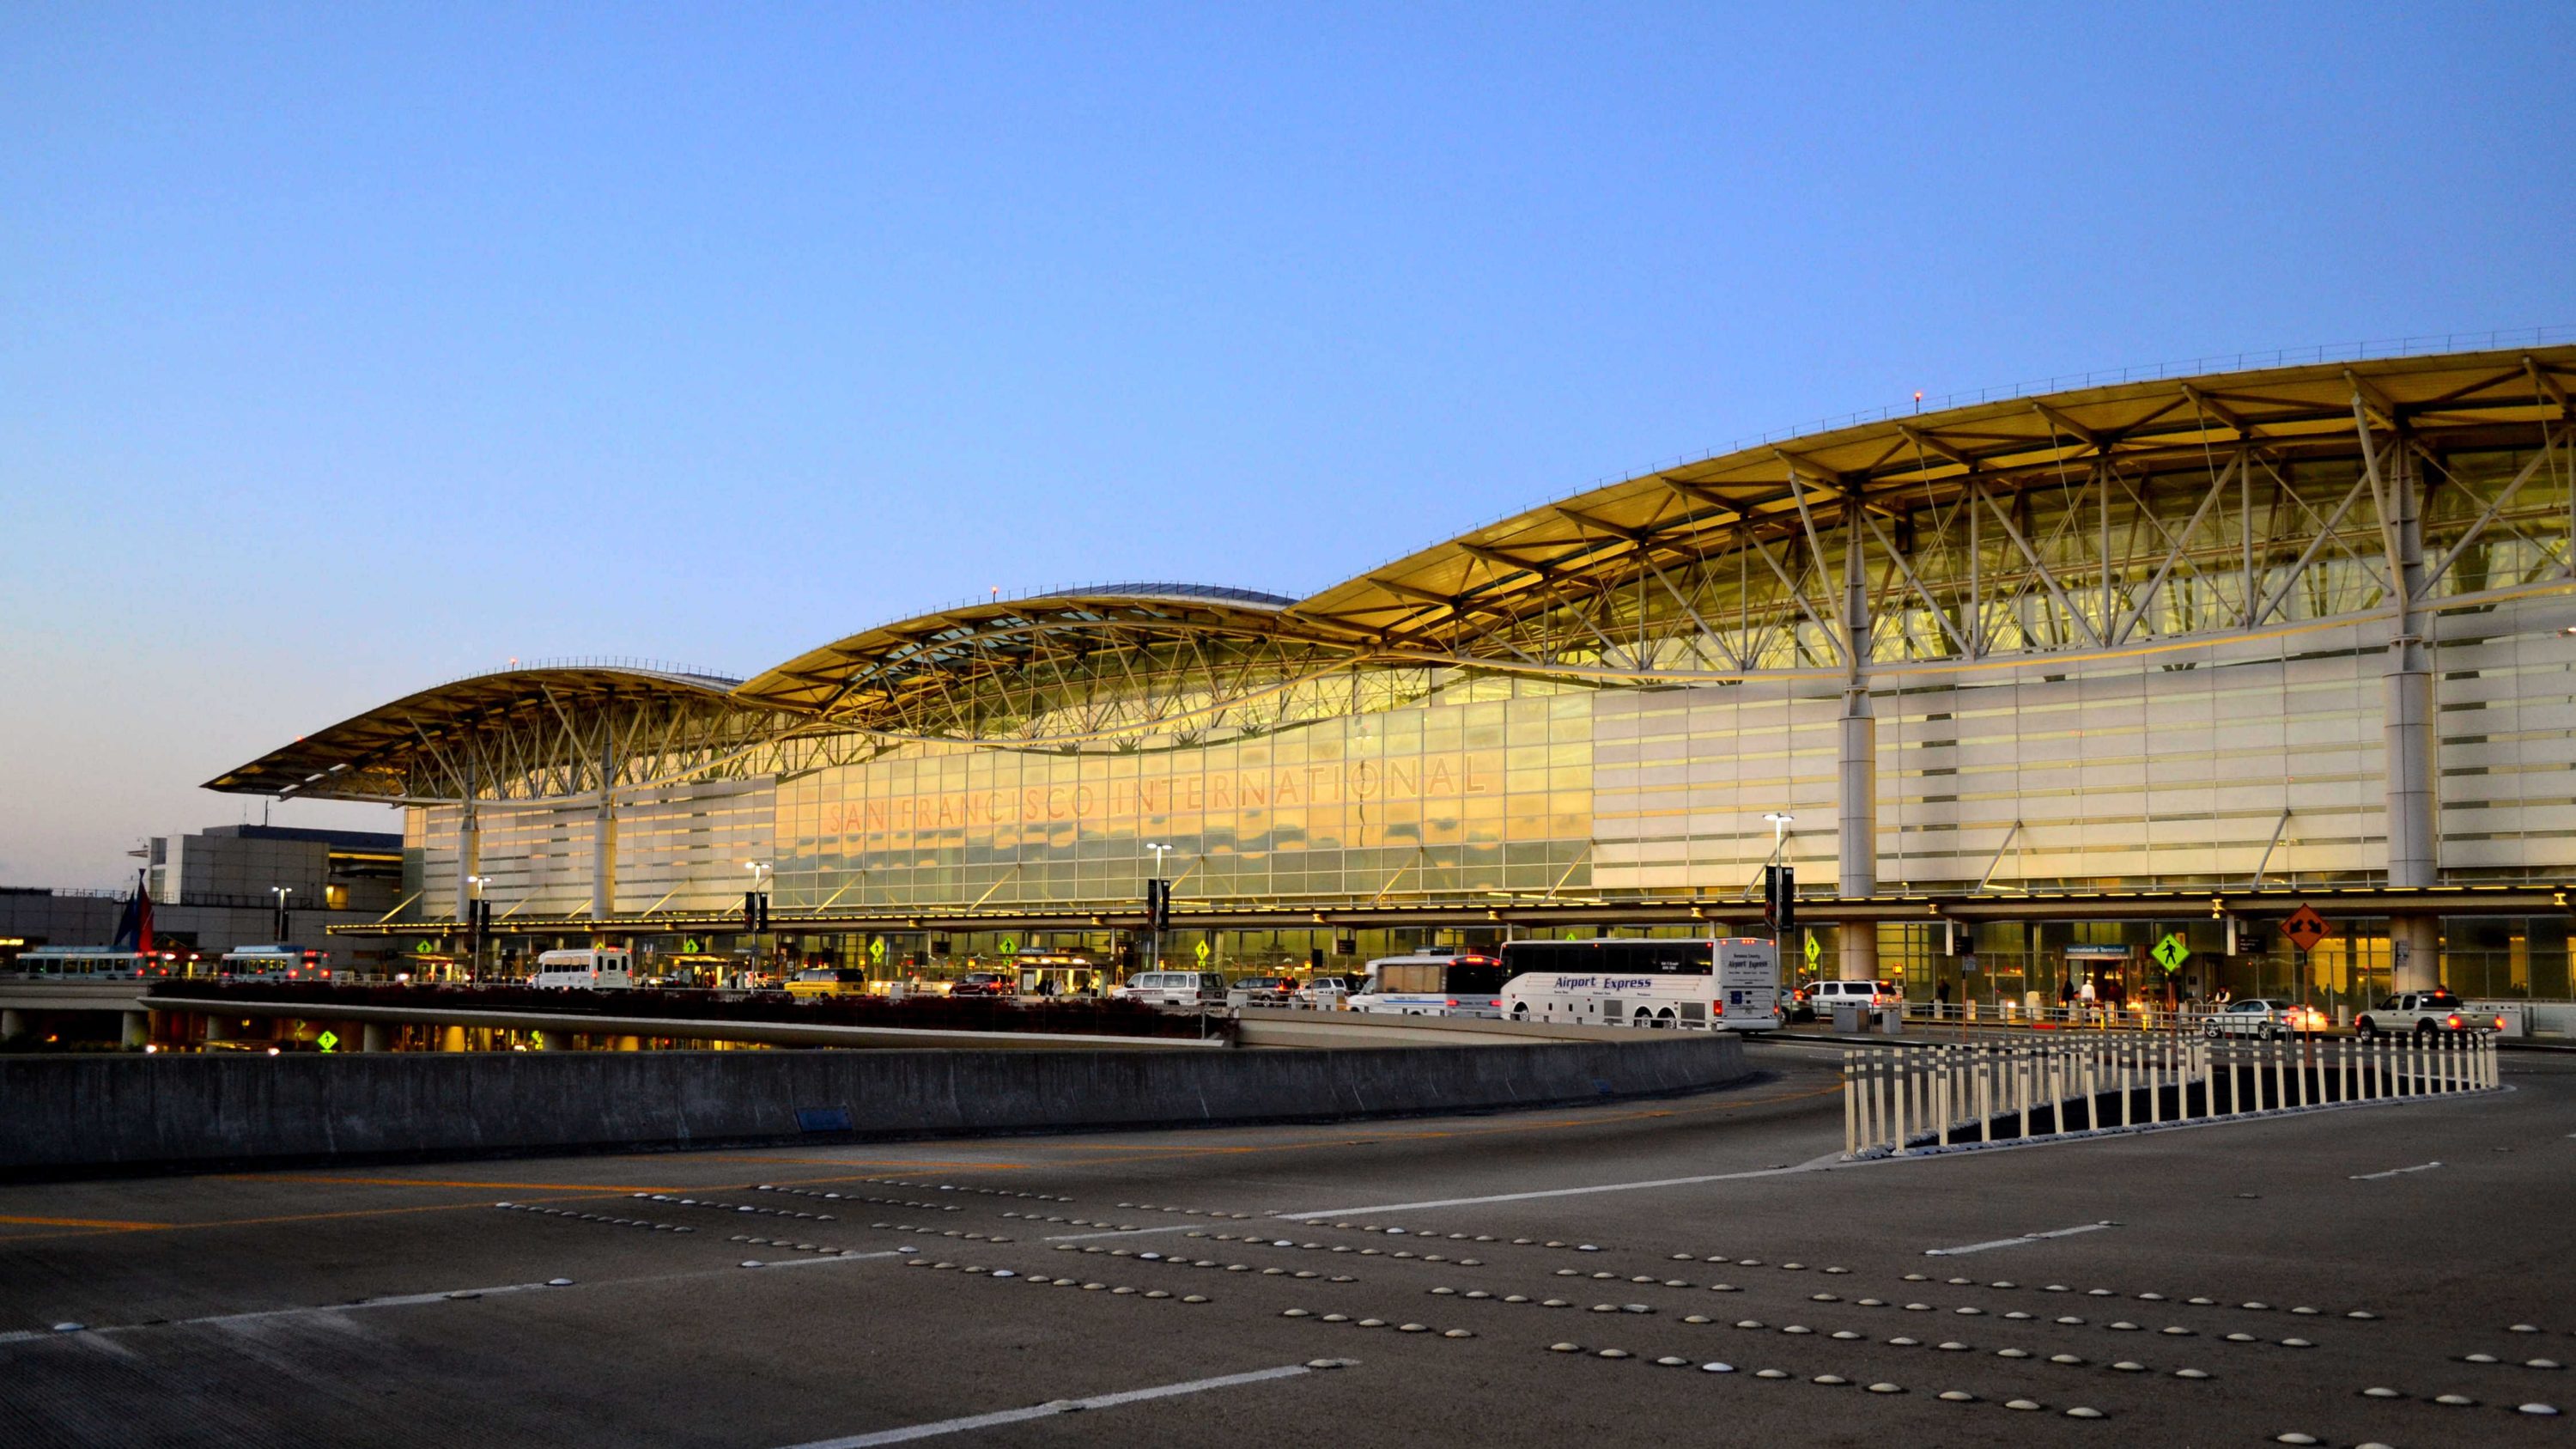 SFO: San Francisco Giants Clubhouse Reviews & Photos - Terminal 3